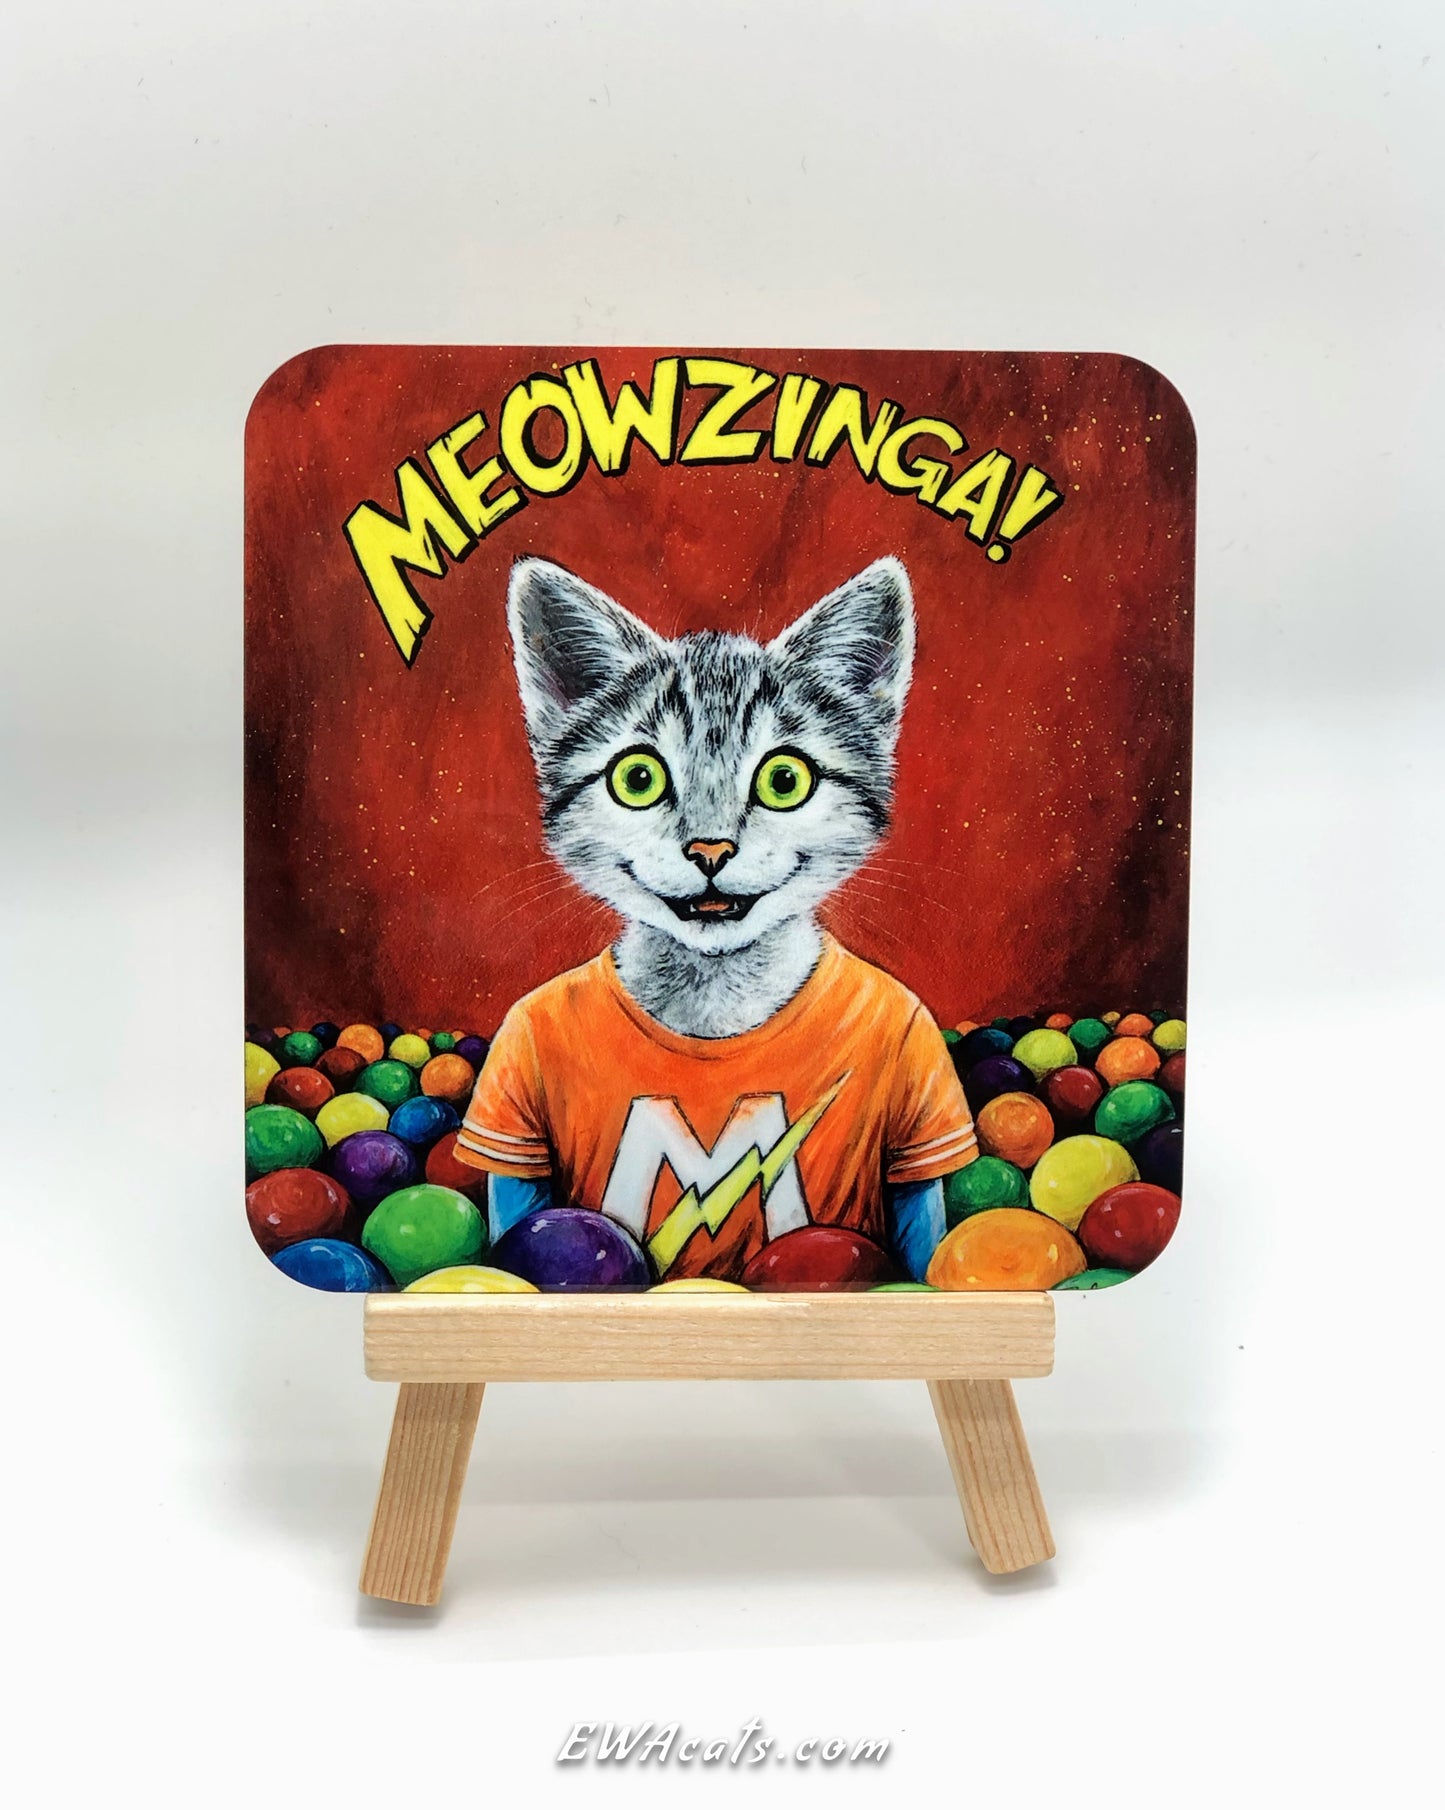 Coaster "Meowzinga"